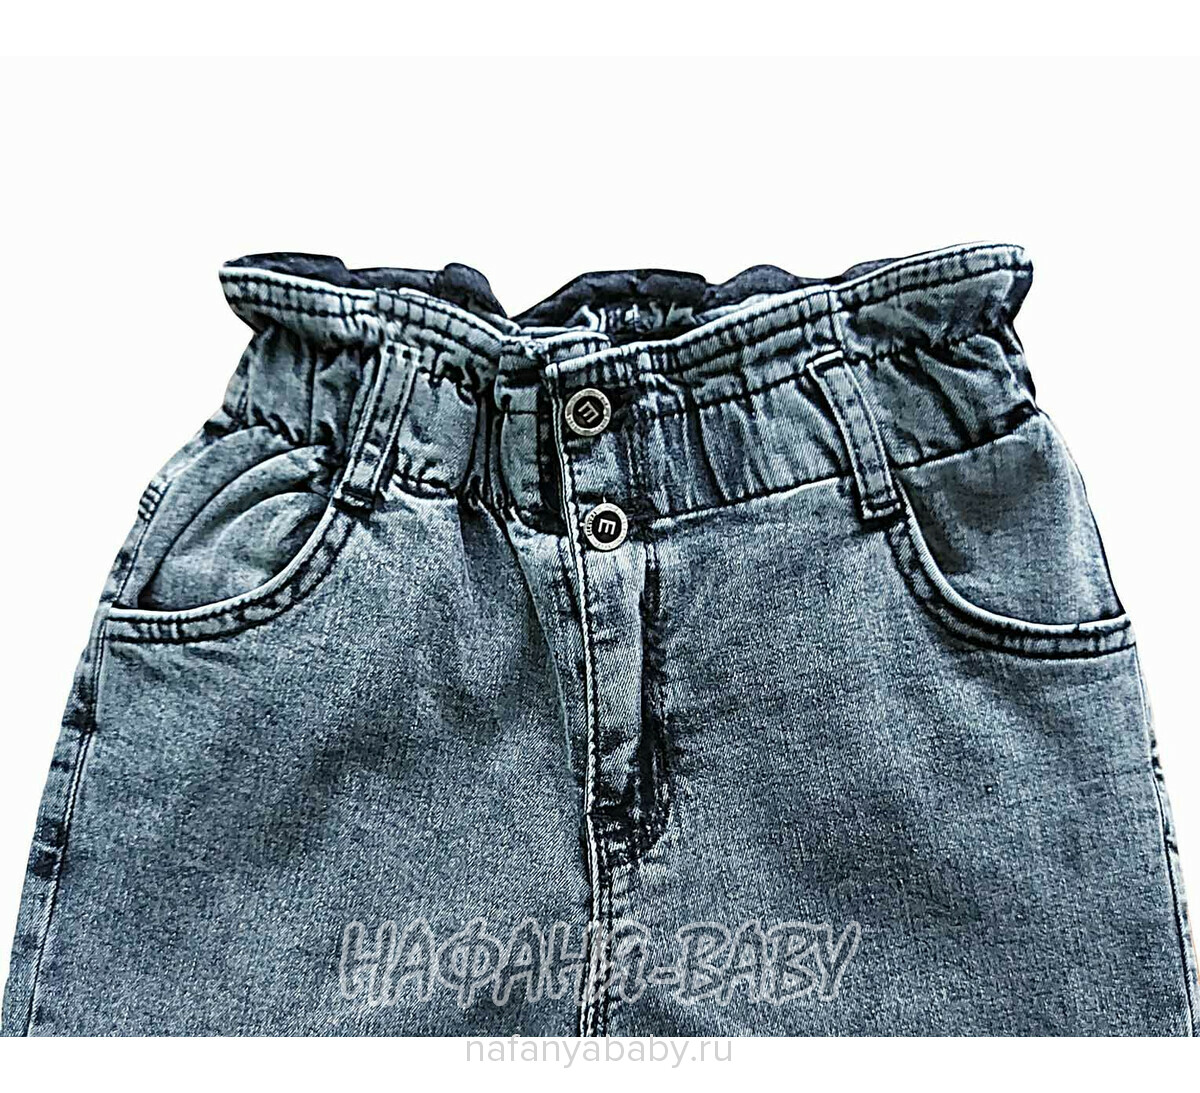 Джинсы подростковые ELEYSA Jeans арт: 6107, 13-16 лет, цвет черный, оптом Турция